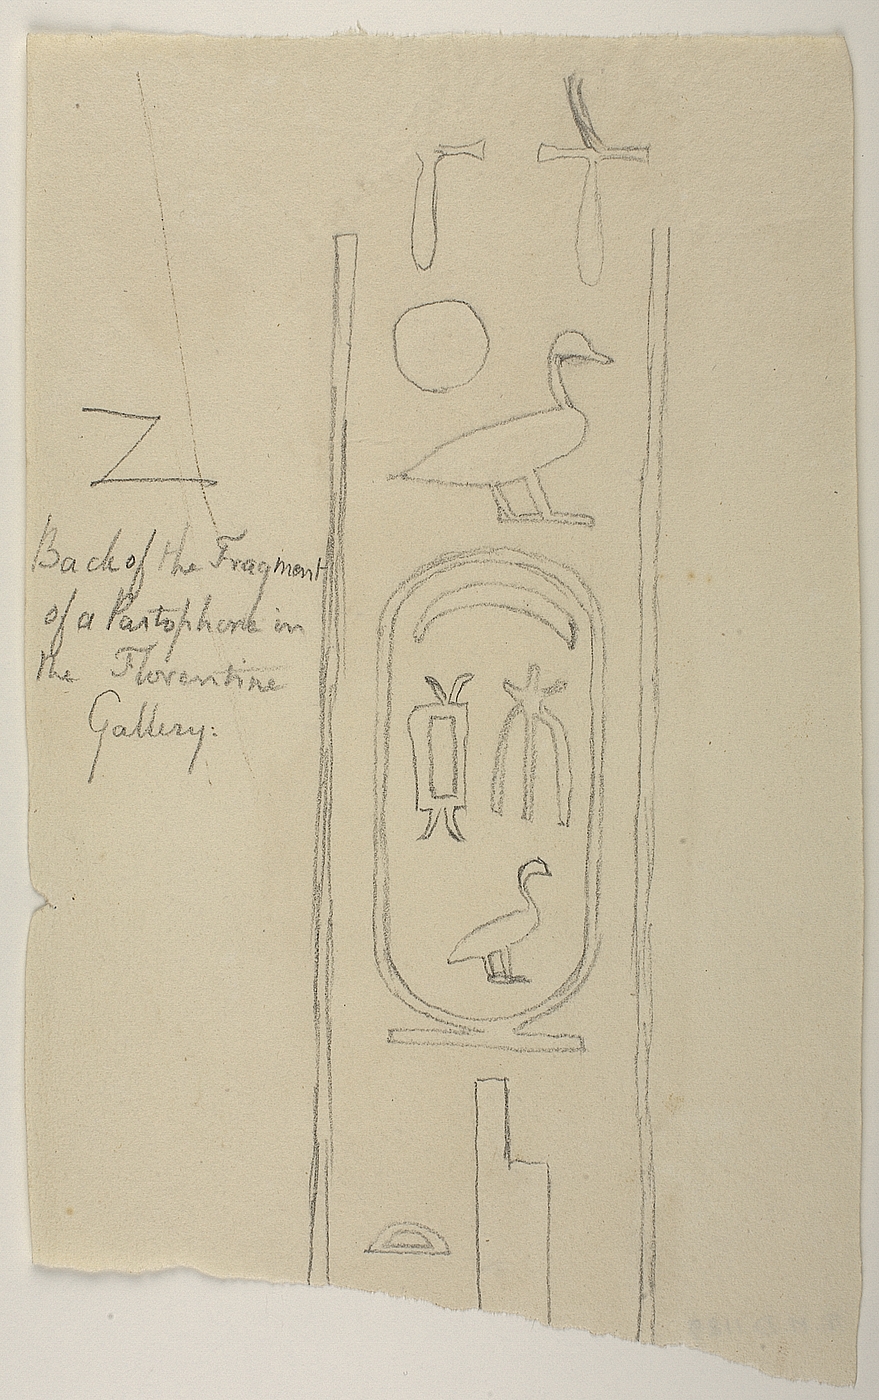 Hieroglyfindskrift, brudstykke